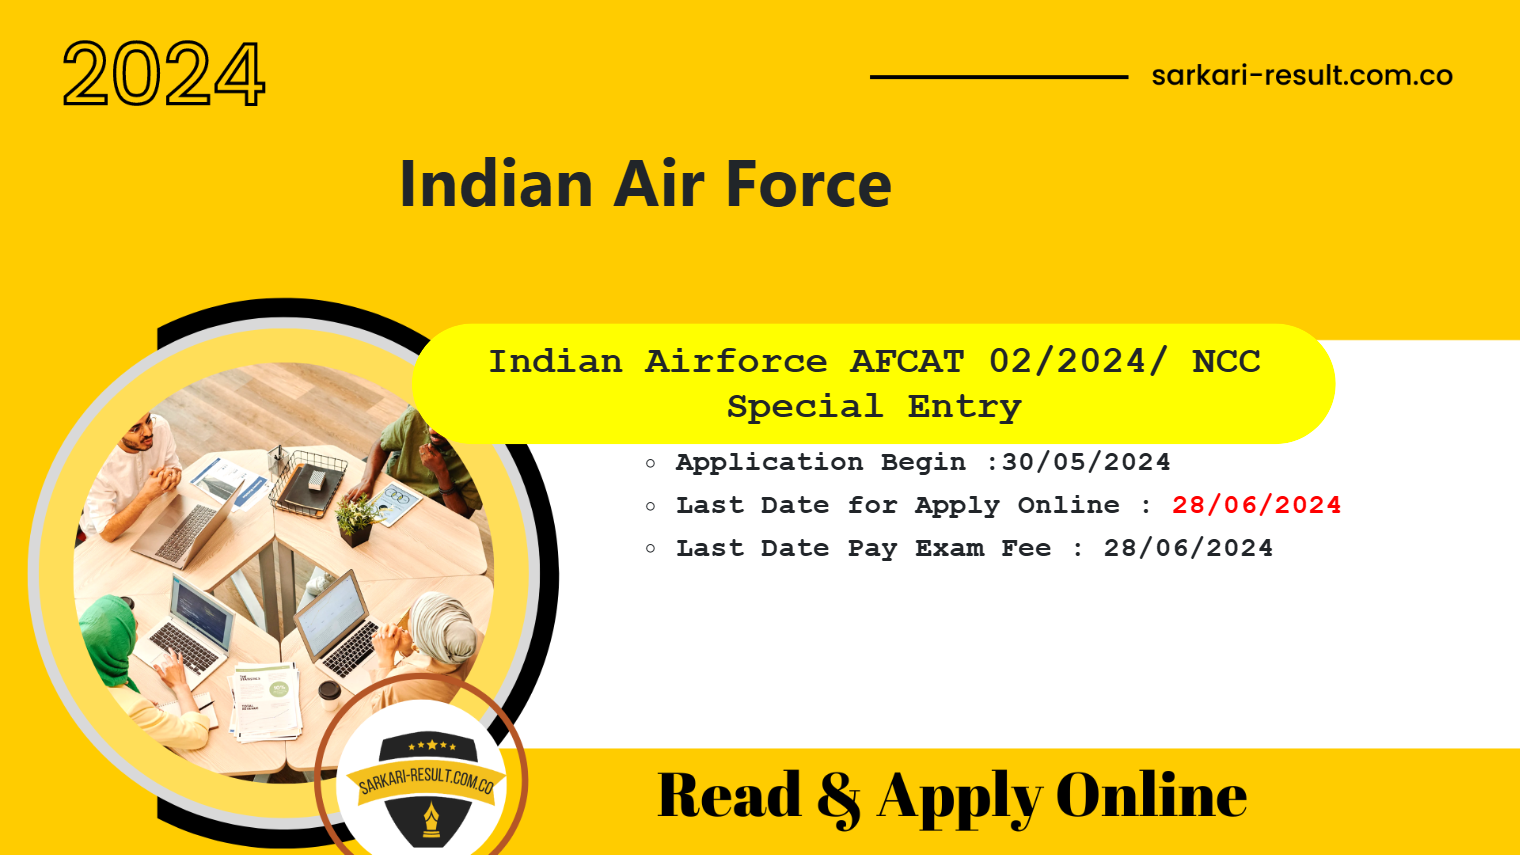 Indian Air Force AFCAT 02/2024 Batch Online Form 2024